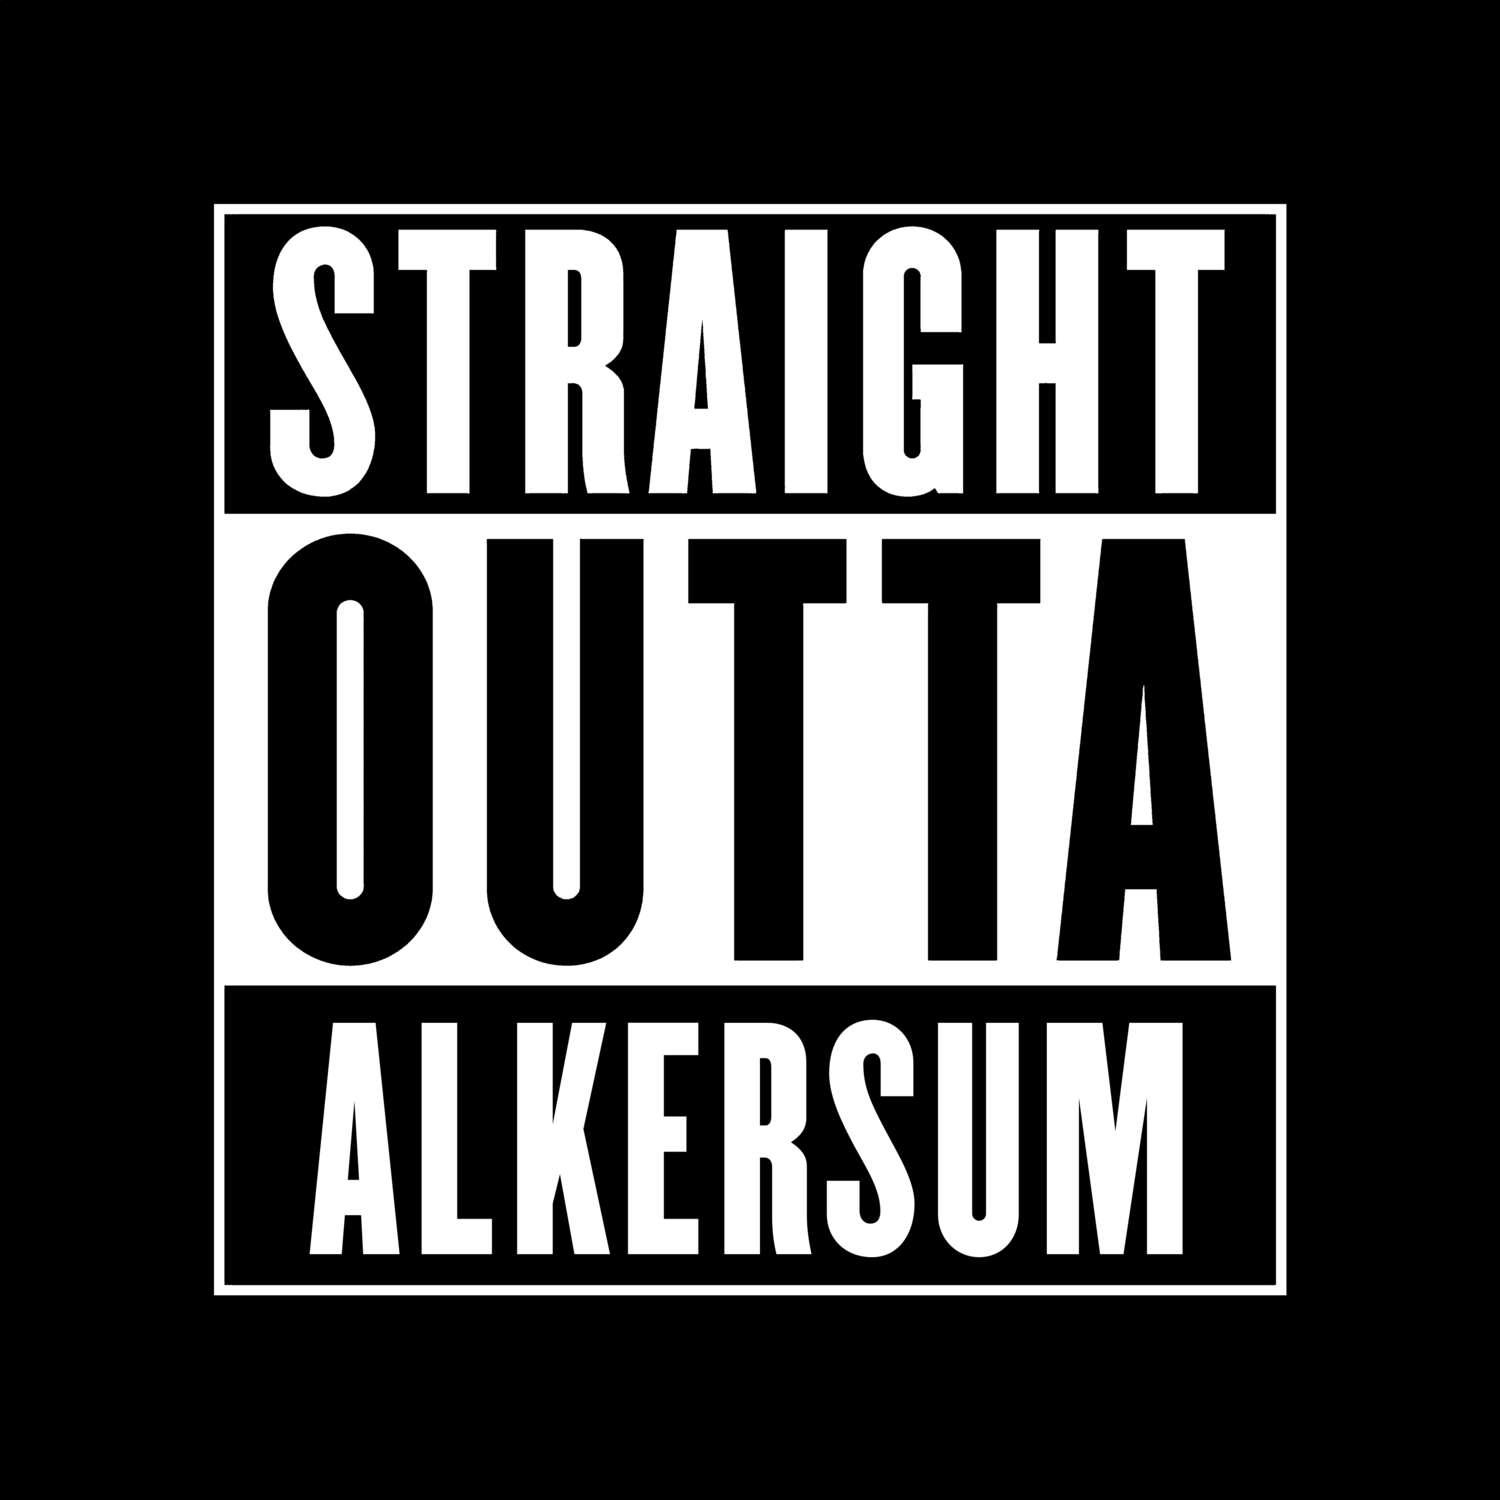 Alkersum T-Shirt »Straight Outta«